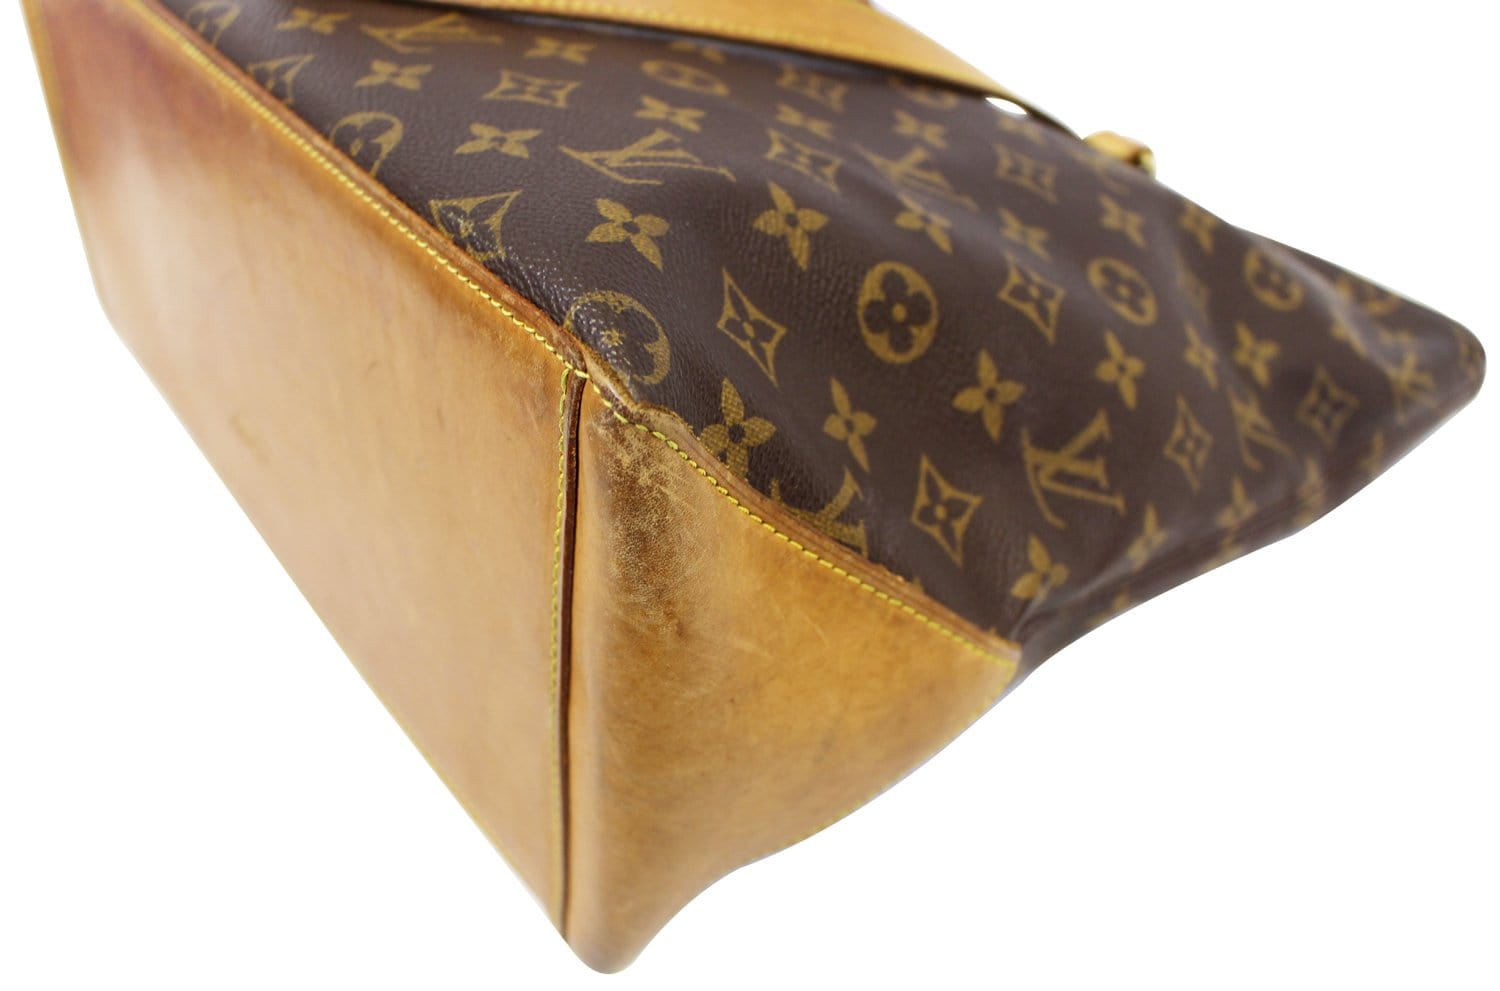 Louis Vuitton VERY RARE❤️ Authentic Cabas Mezzo Tote Bag Monogram - $1499 -  From Uta